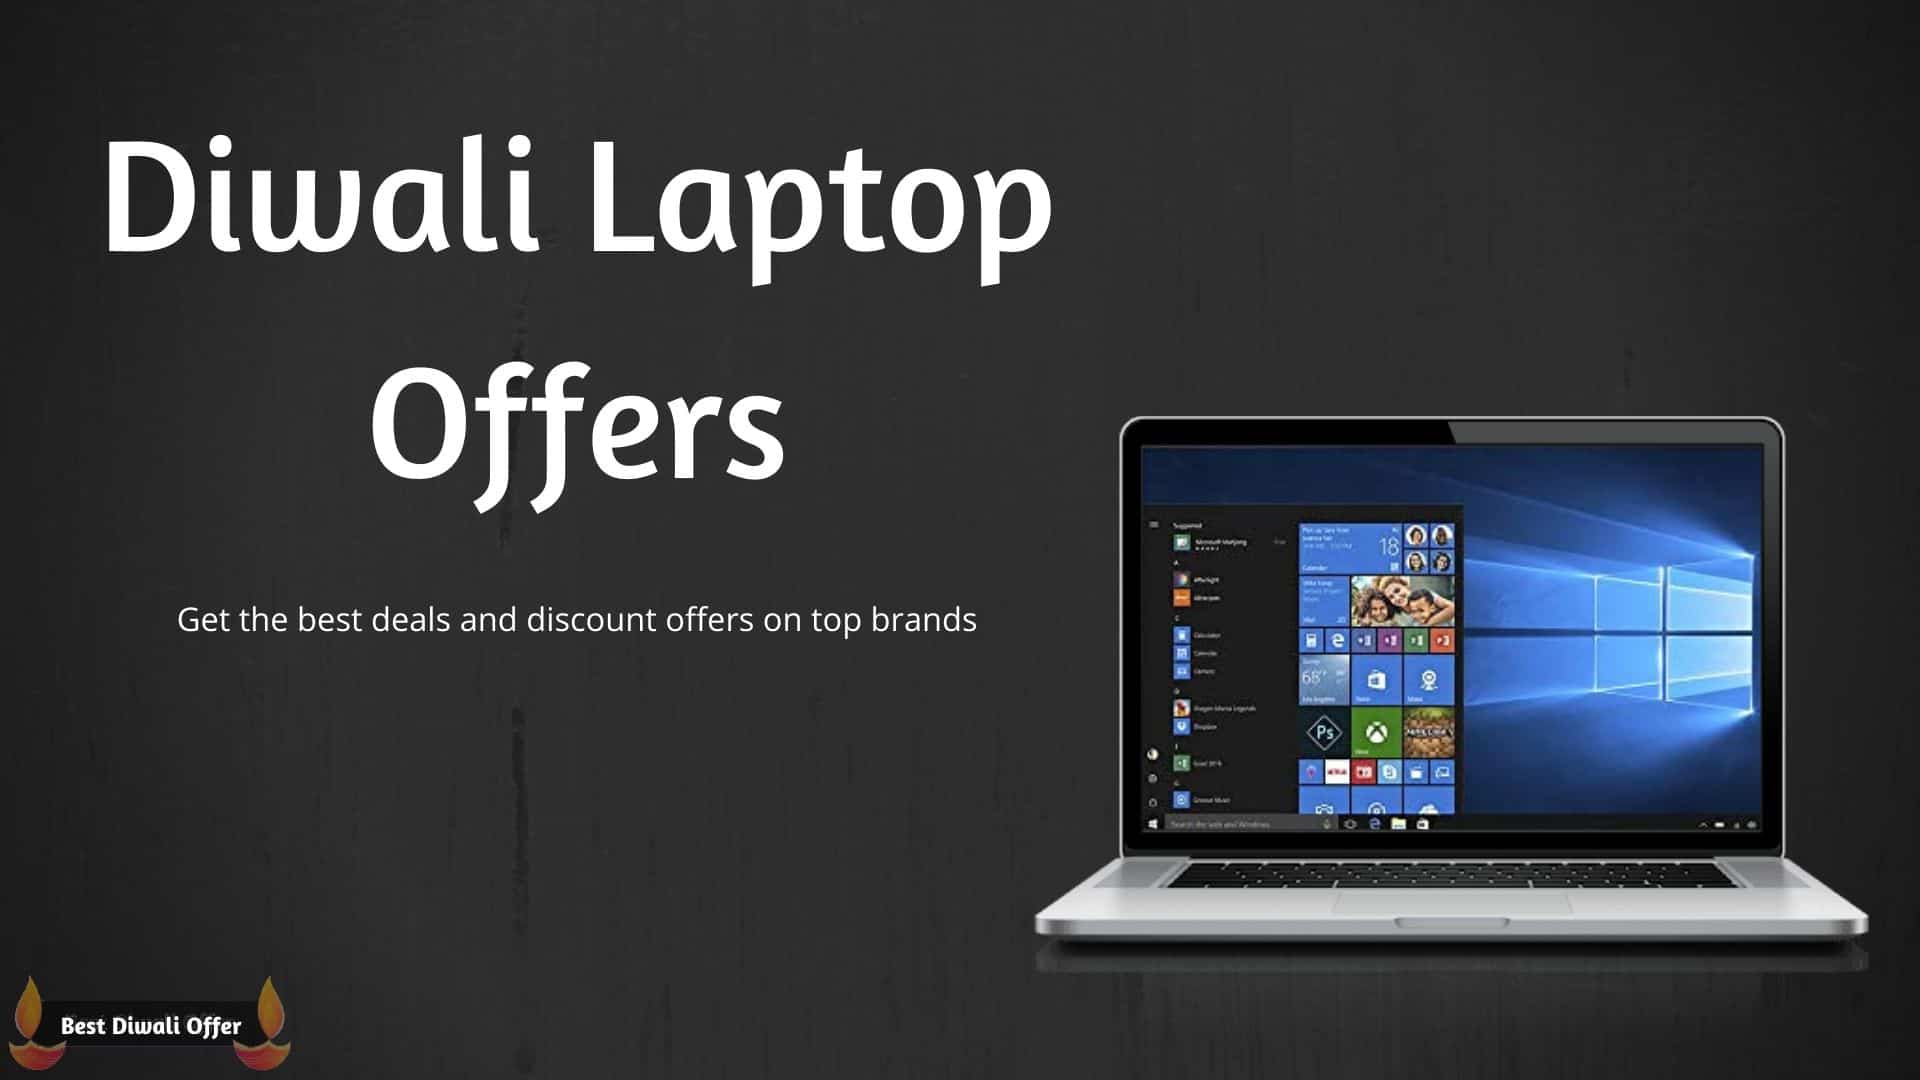 Diwali Laptop Offers